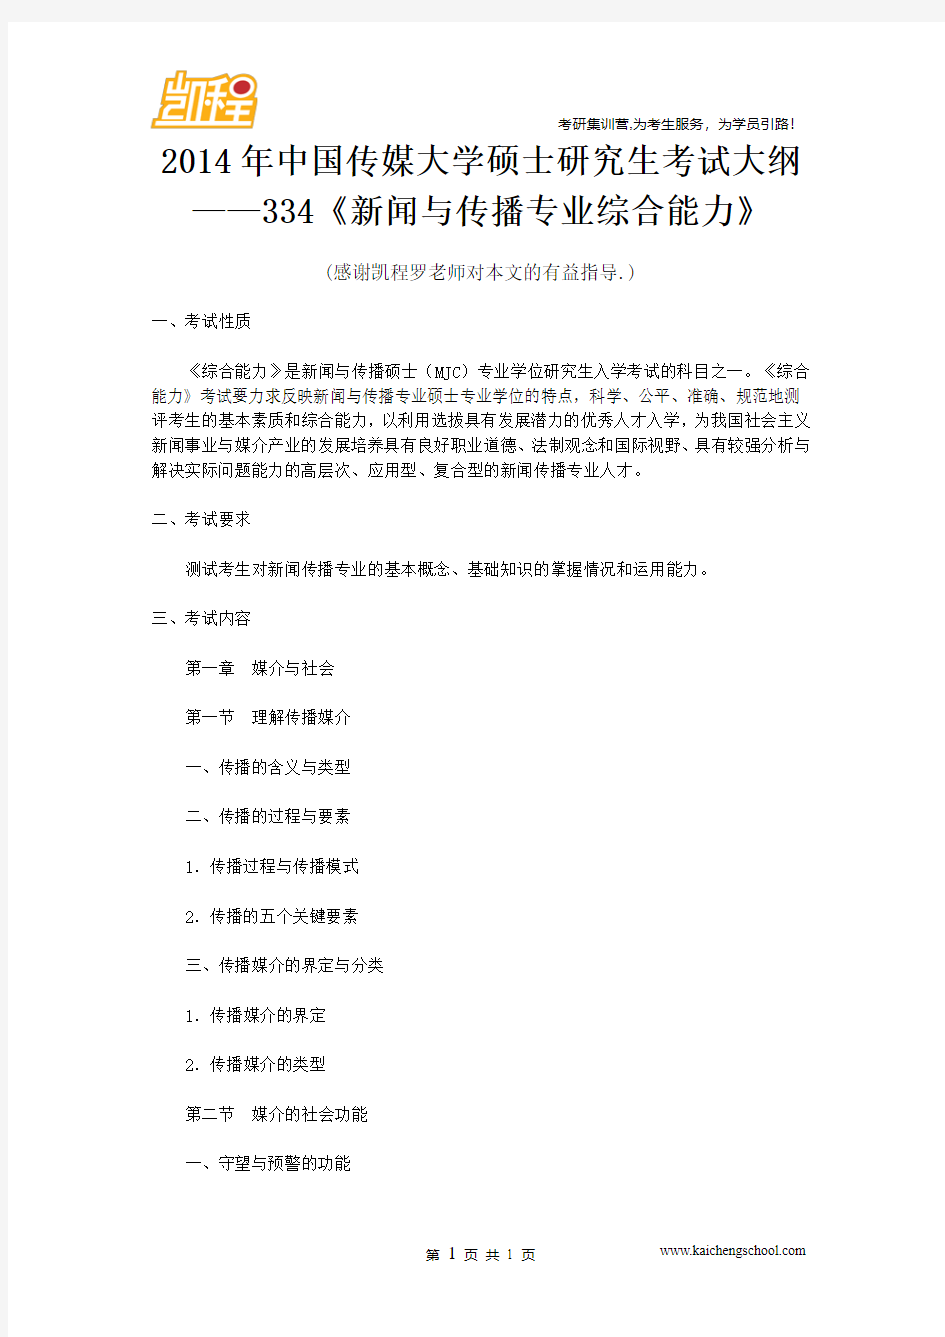 2014年中国传媒大学硕士研究生考试大纲——334《新闻与传播专业综合能力》